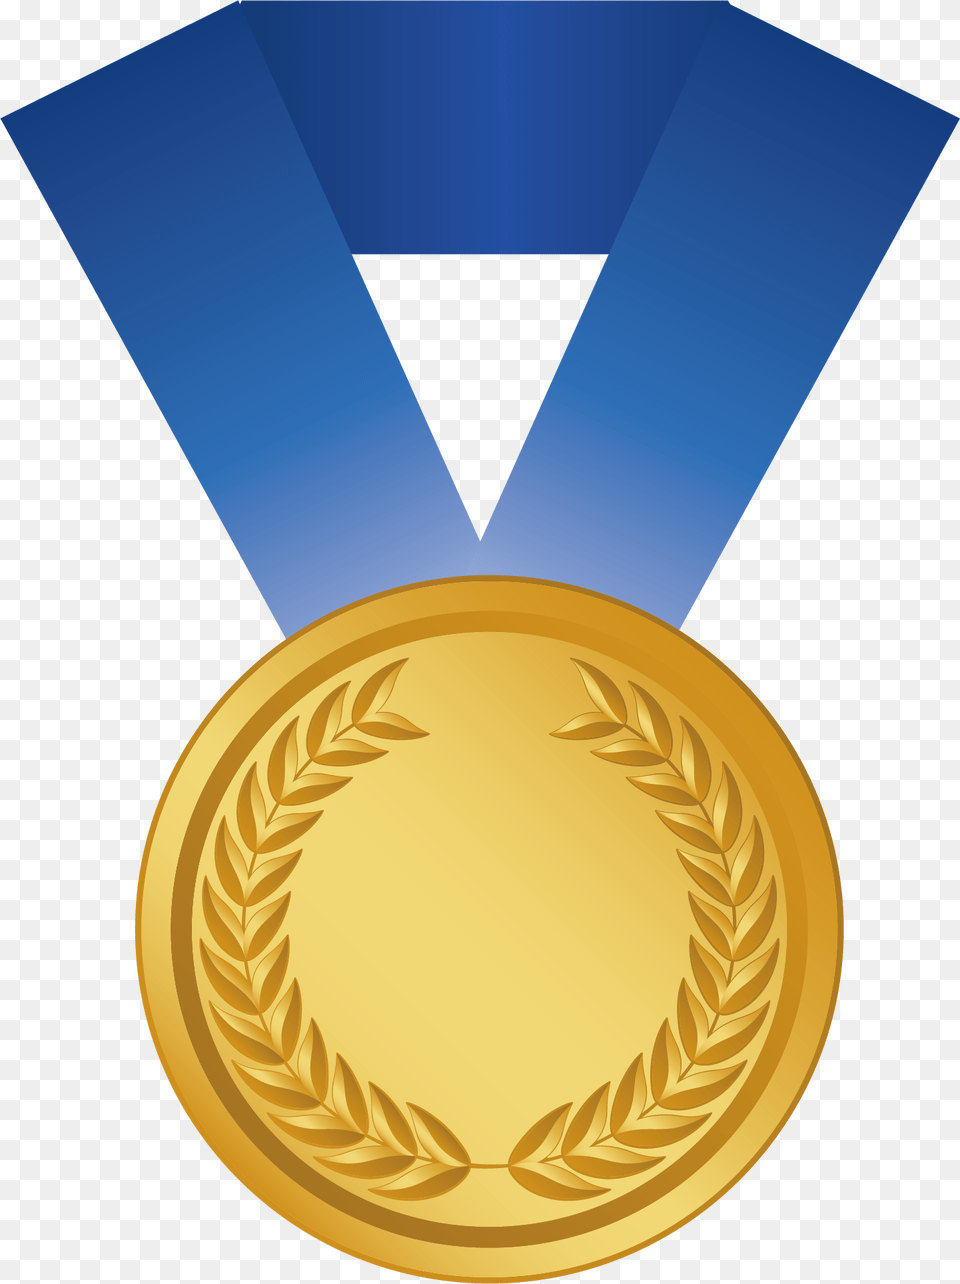 Gold Medal Award Silver Medal Bronze Medal Transparent Background Gold Medal Cartoon, Gold Medal, Trophy Png